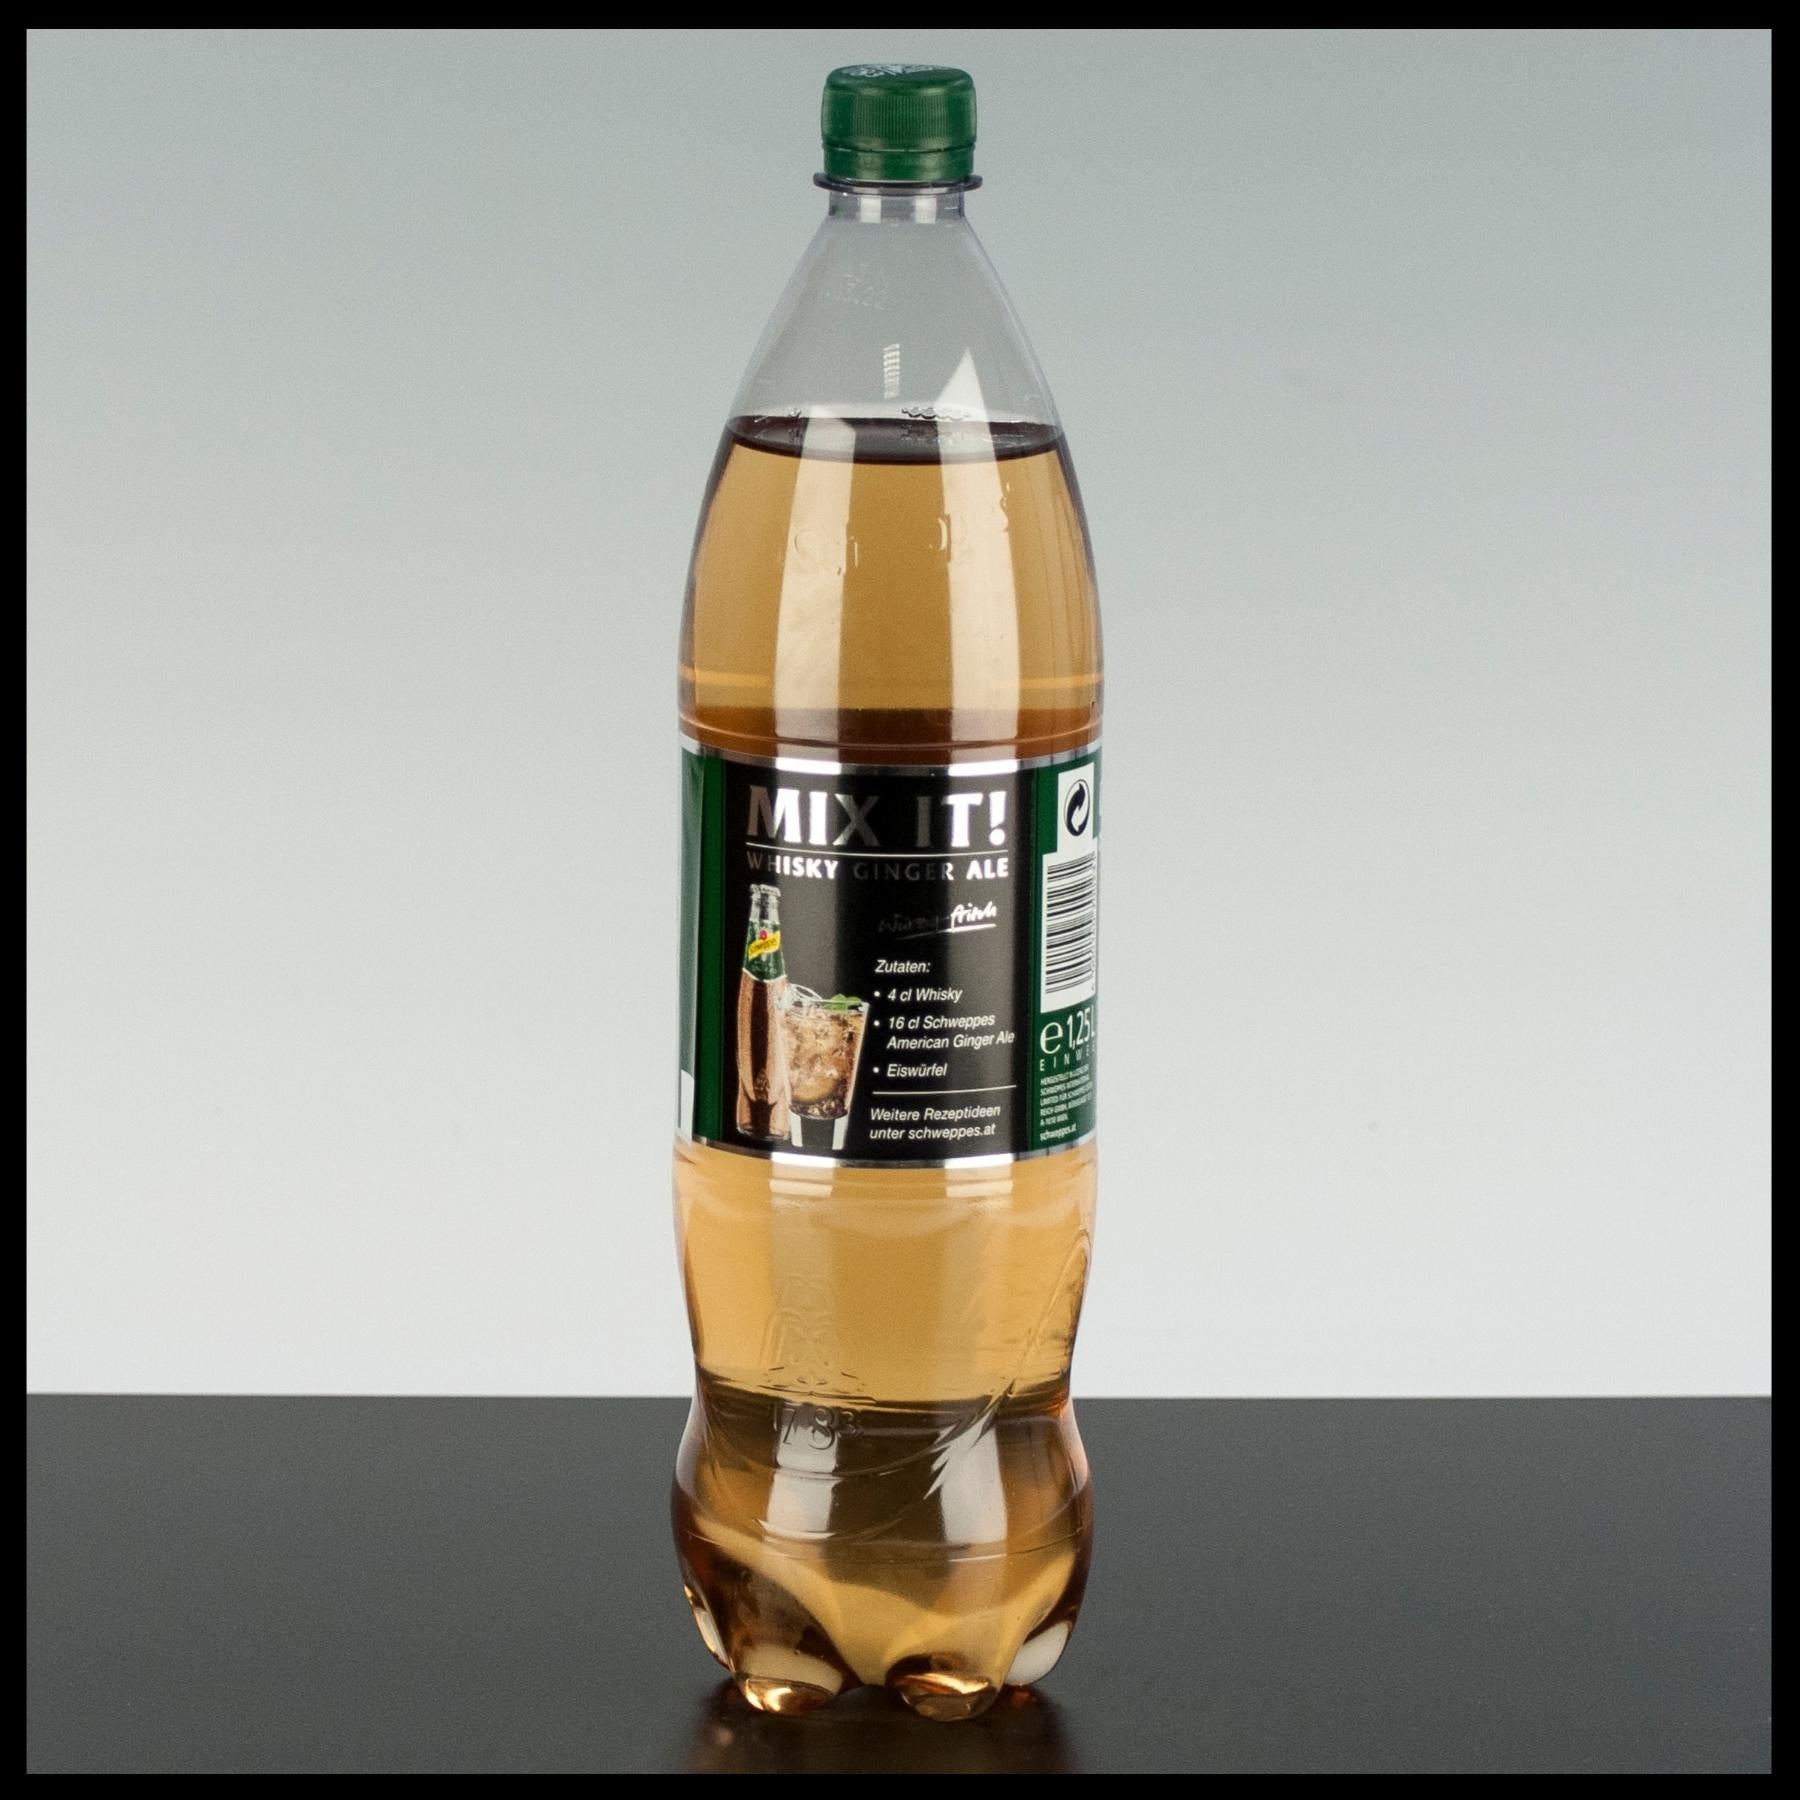 Schweppes Ginger Ale 1,25L - Trinklusiv